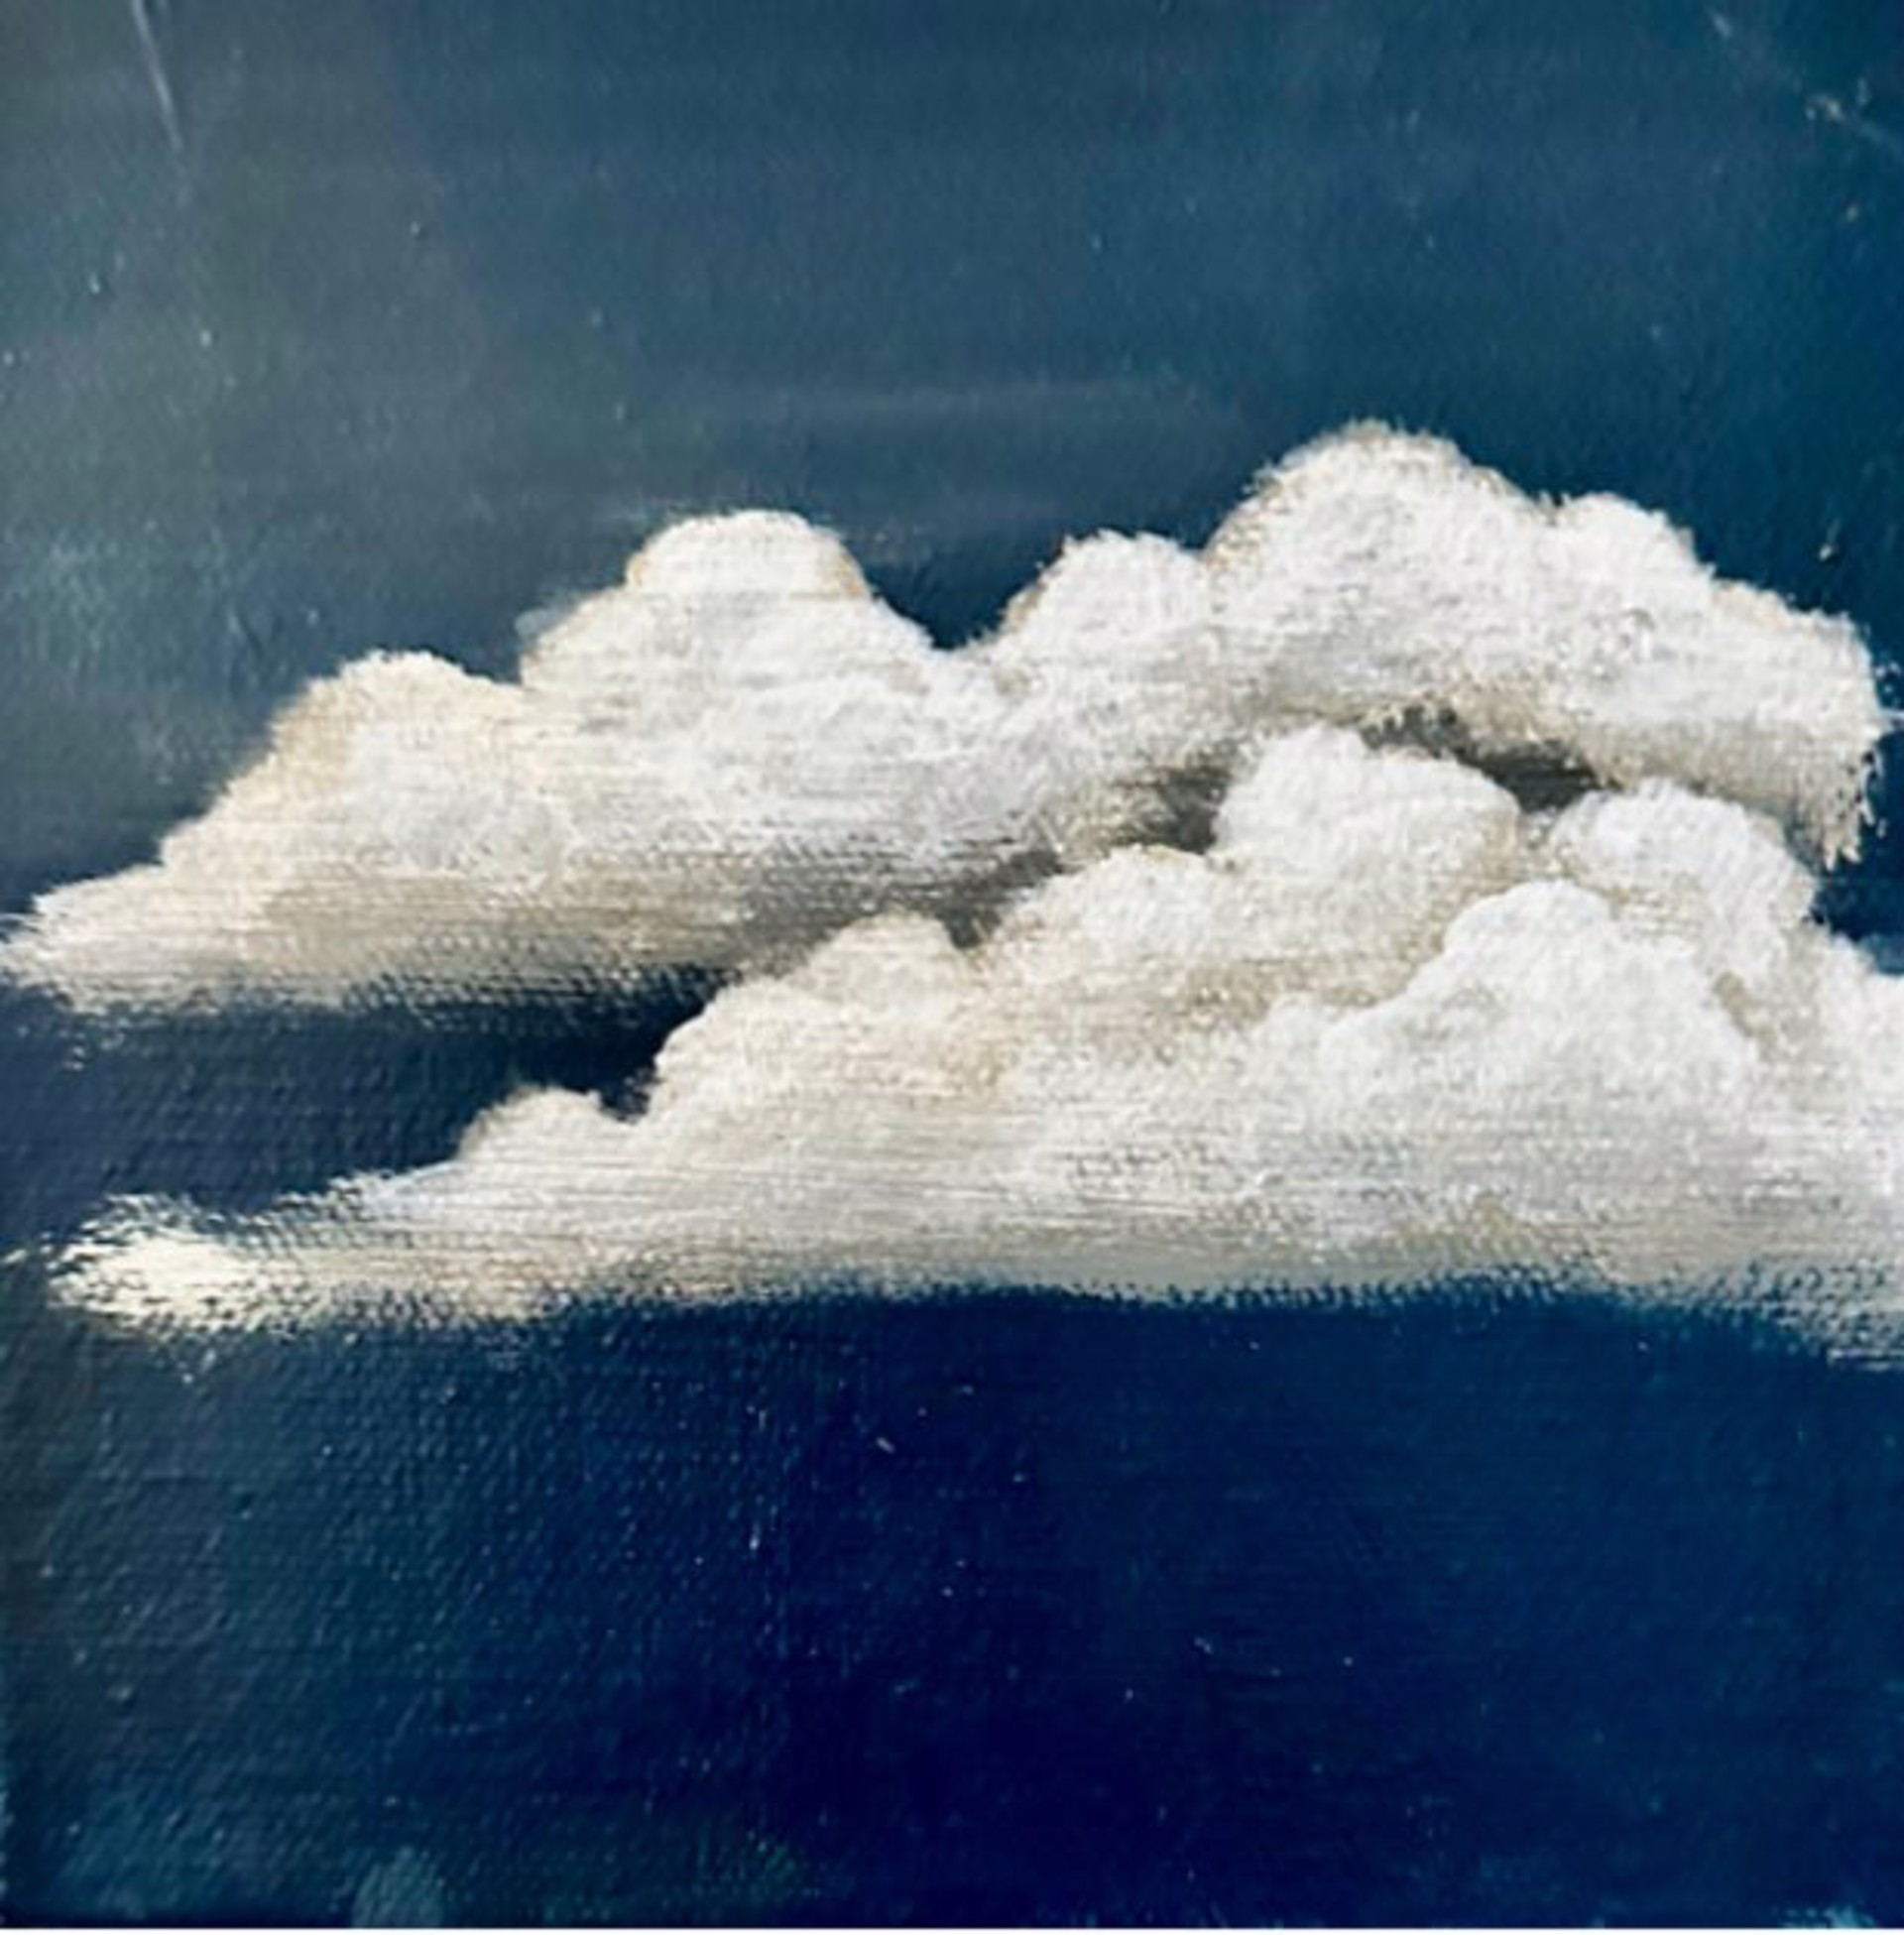 Blue Clouds by Dawn Martin Fischer